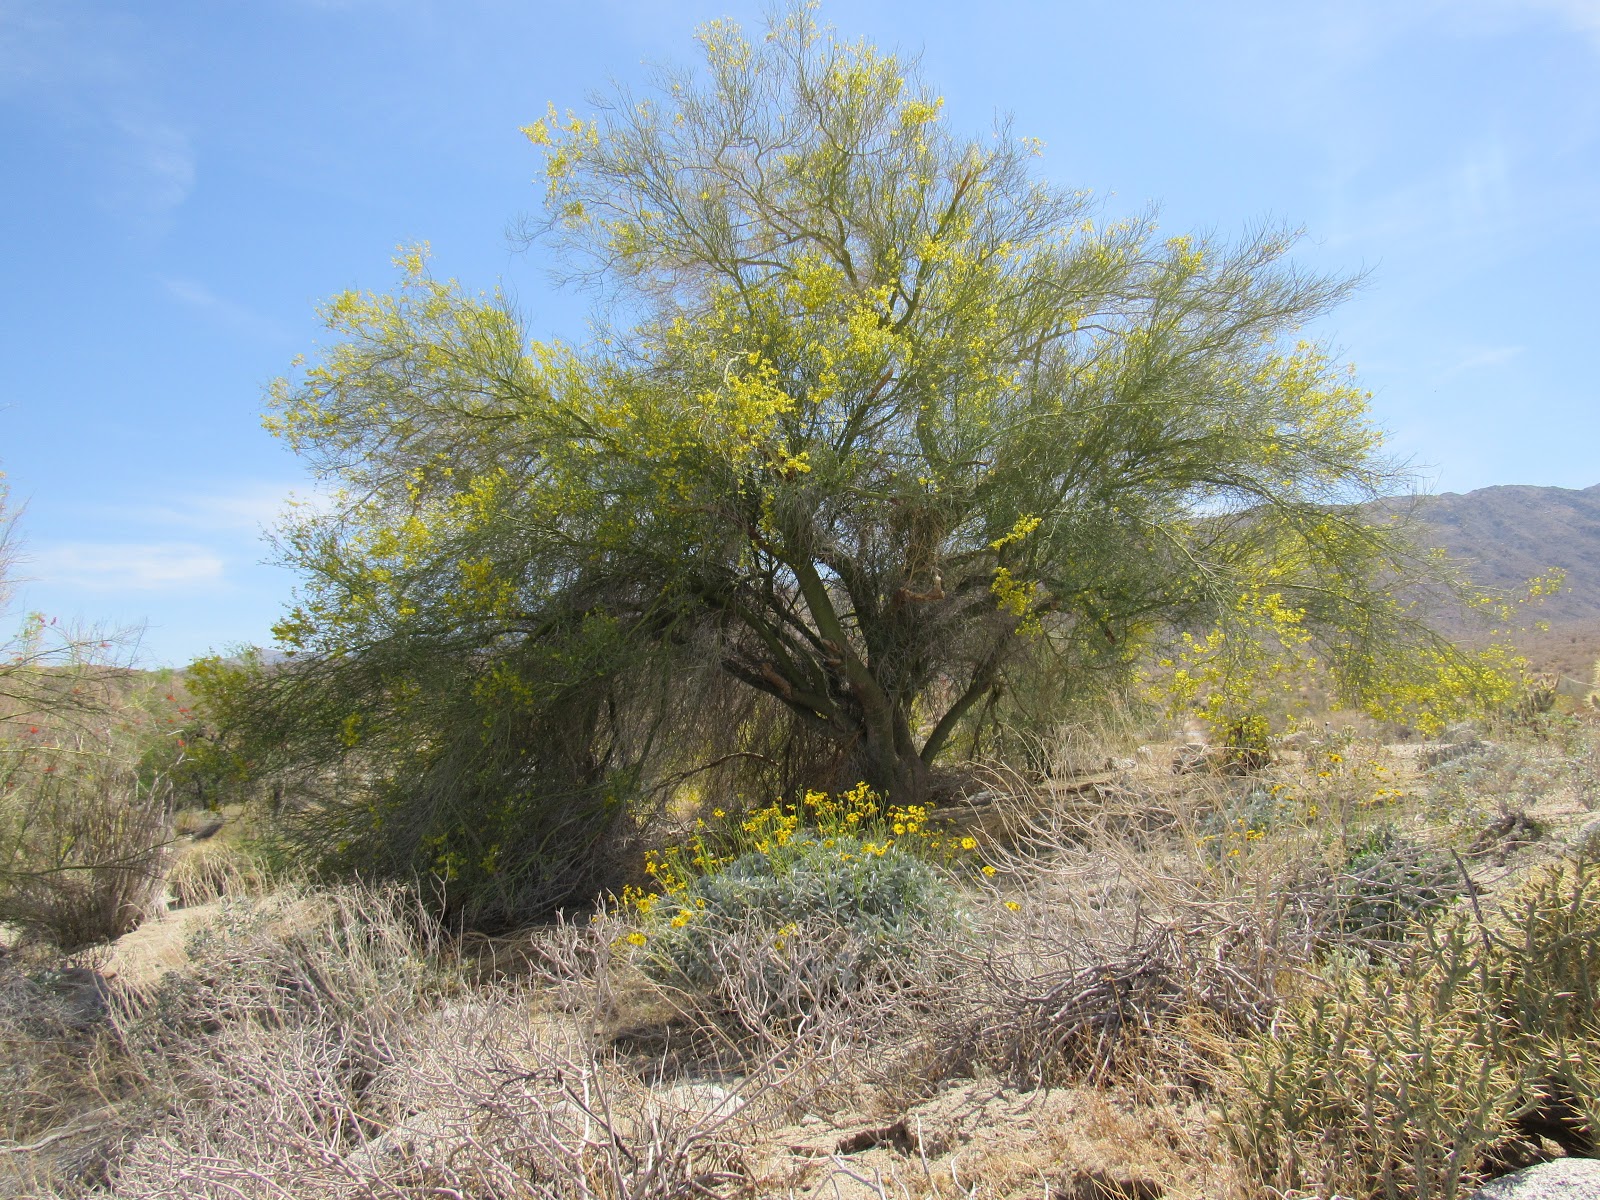 Flowering Trees & Shrubs of the Colorado Desert